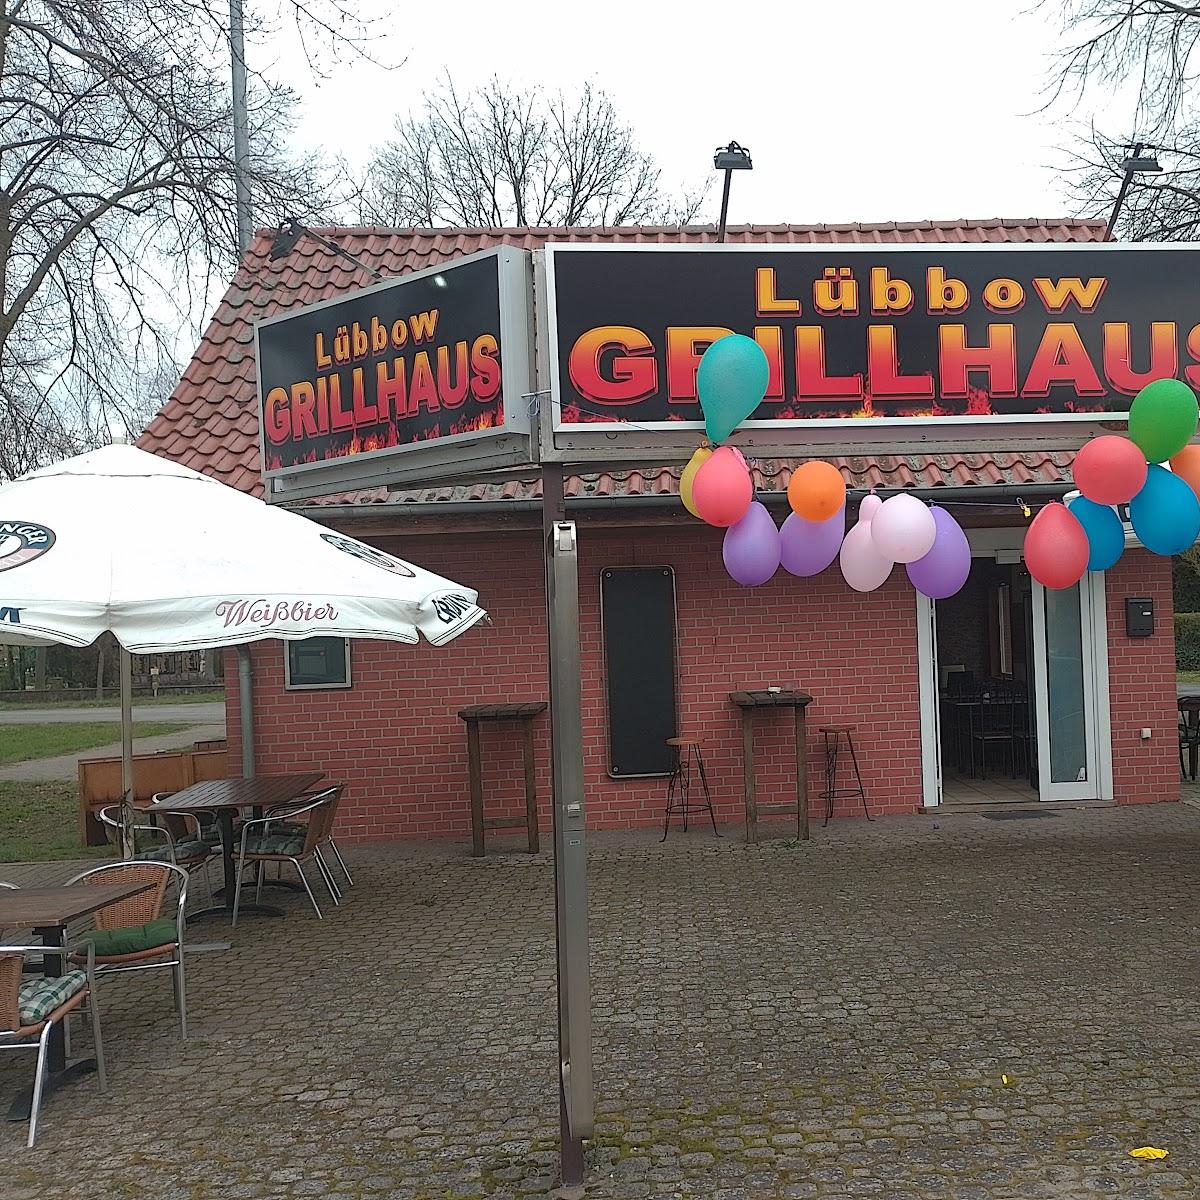 Restaurant "Grillhaus" in Lübbow